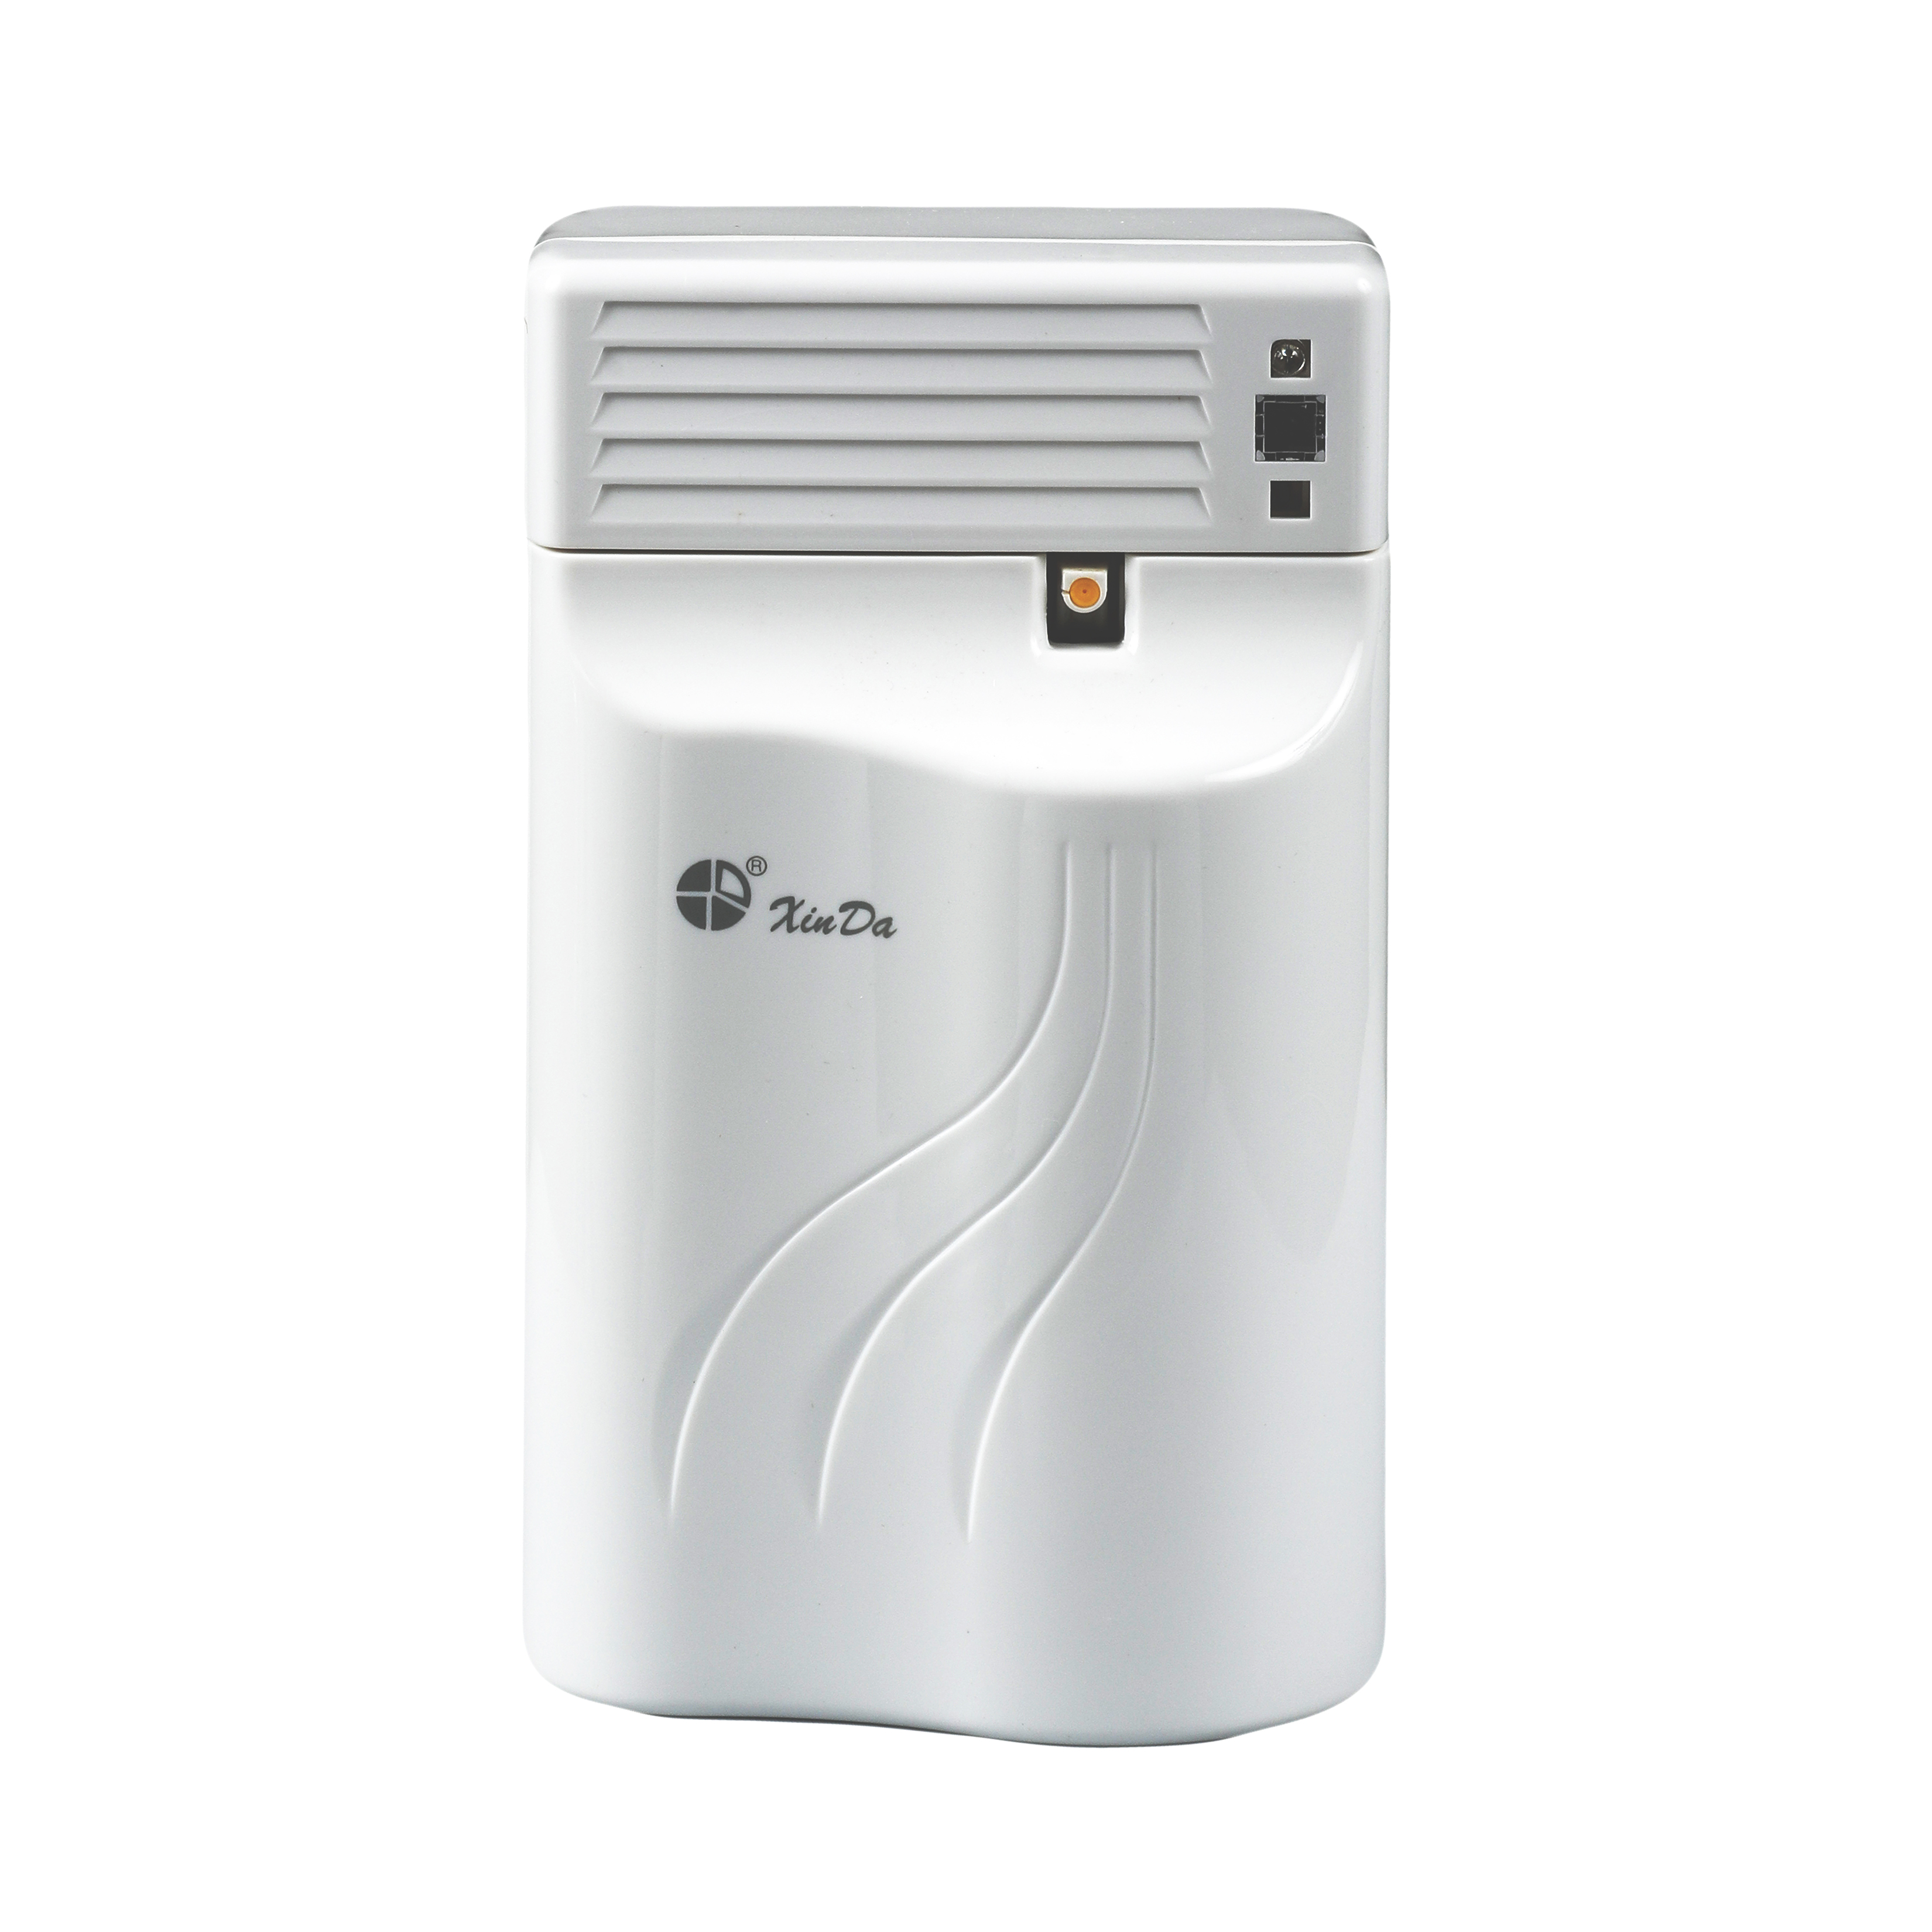 O XinDa PXQ188B plugue de óleo de fragrância elétrica personalizado ambientador ajustável ambientador Ambientador Perfume Aerossol Dispensador